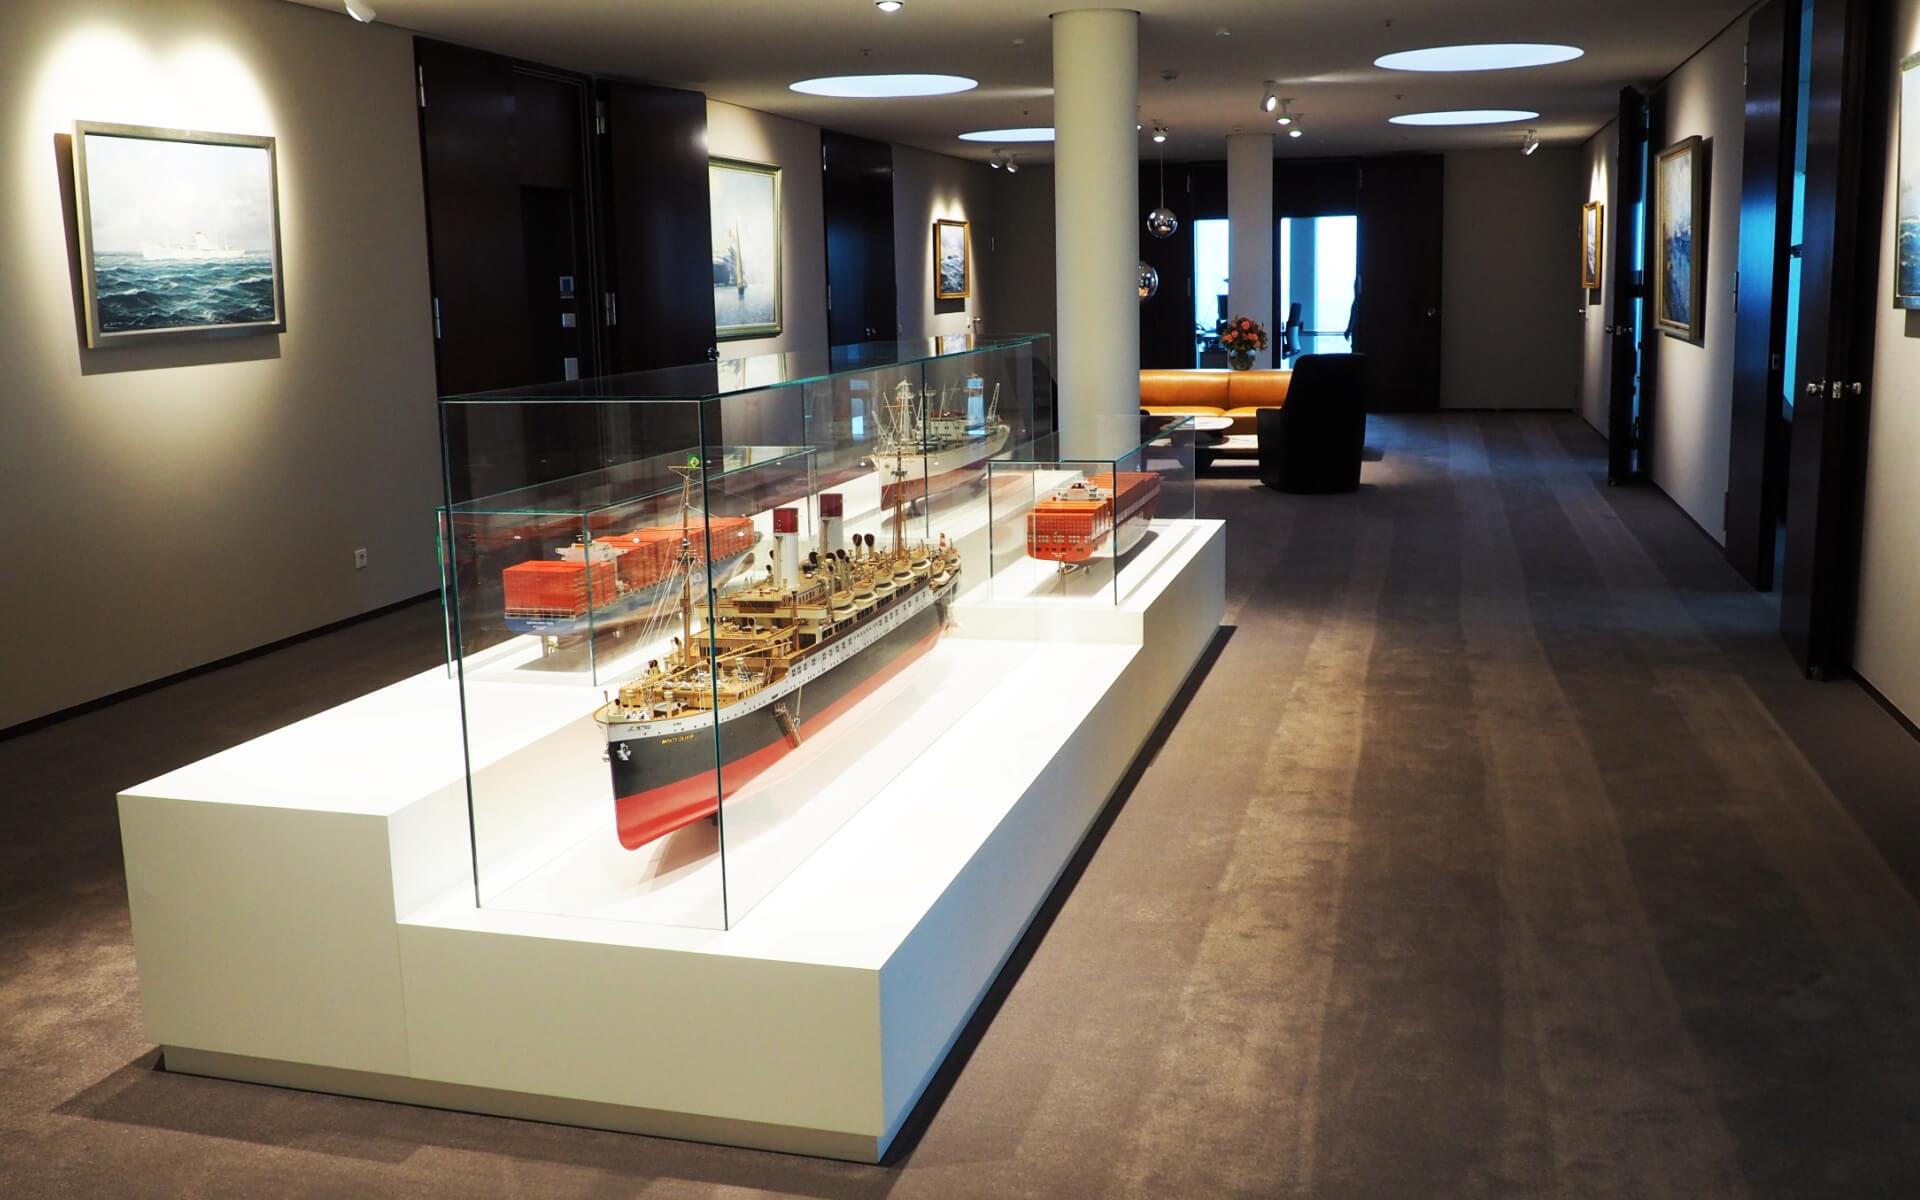 Delafair - Innenausbau Hamburg Süd - Ausstellungsraum Schiffsmodelle in Vitrinen